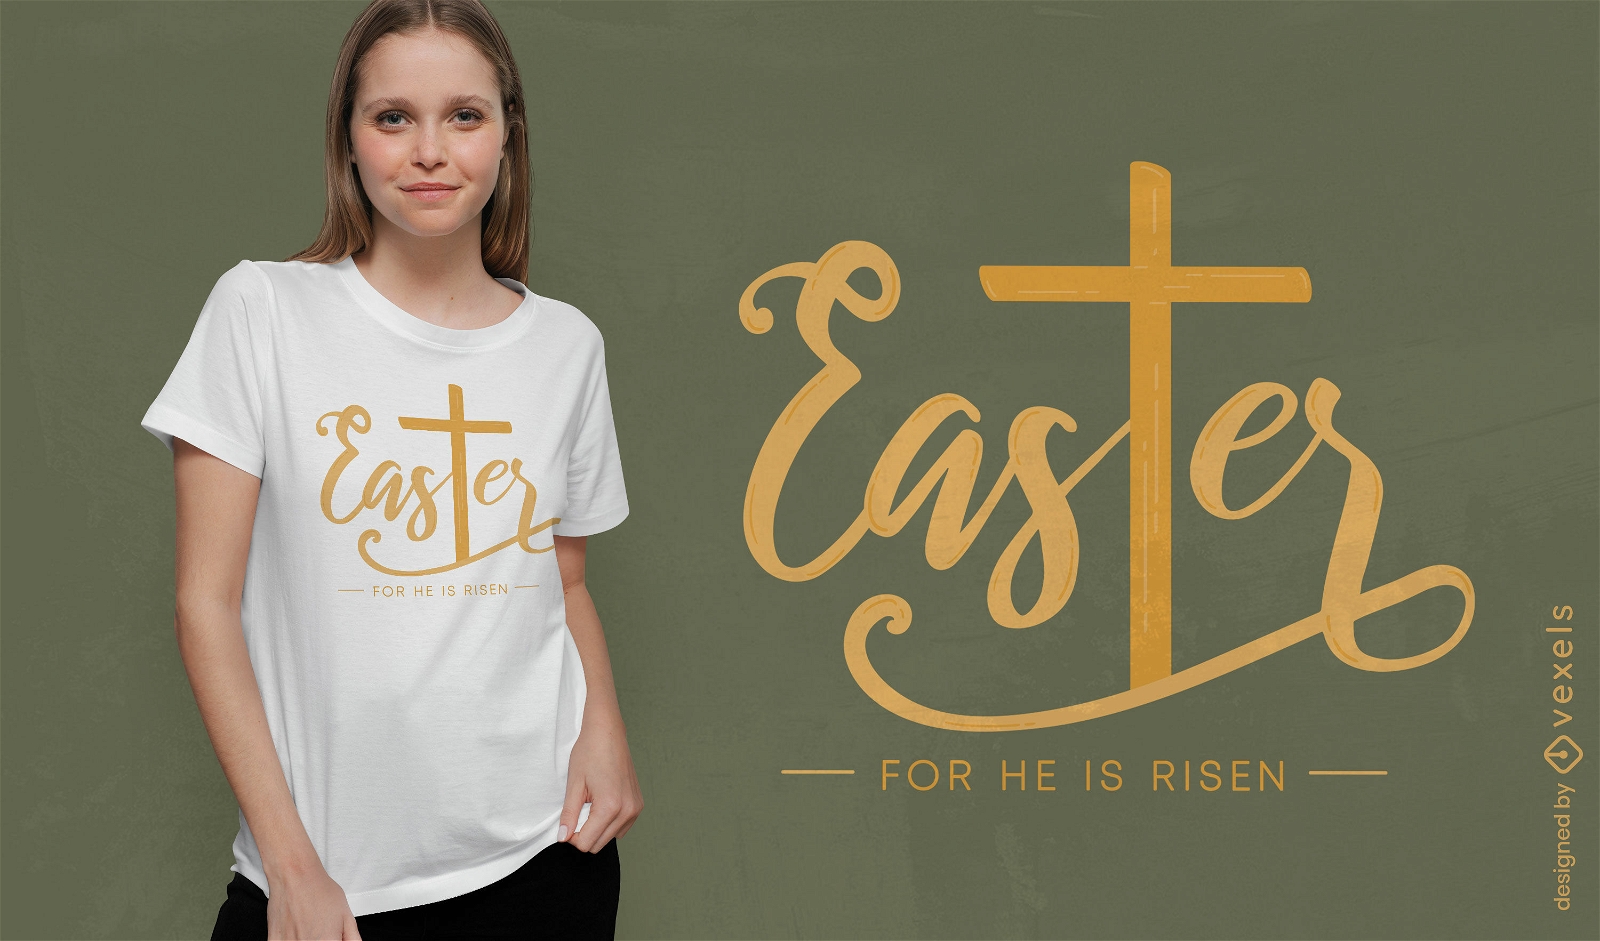 Ostern ist f?r ihn ein auferstandenes T-Shirt-Design